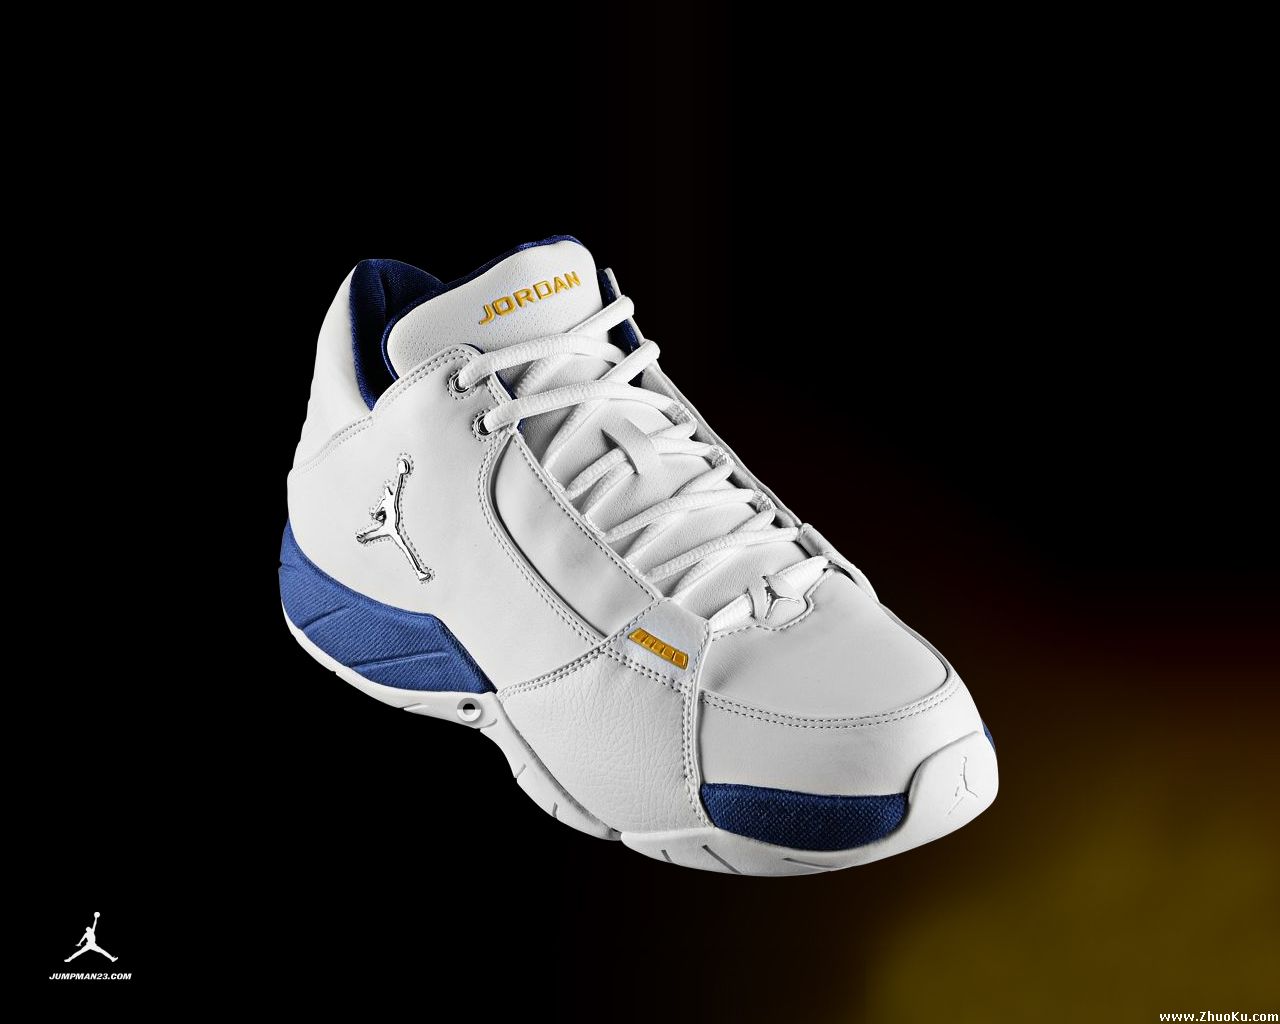 Jordan Shoes Wallaper Picture